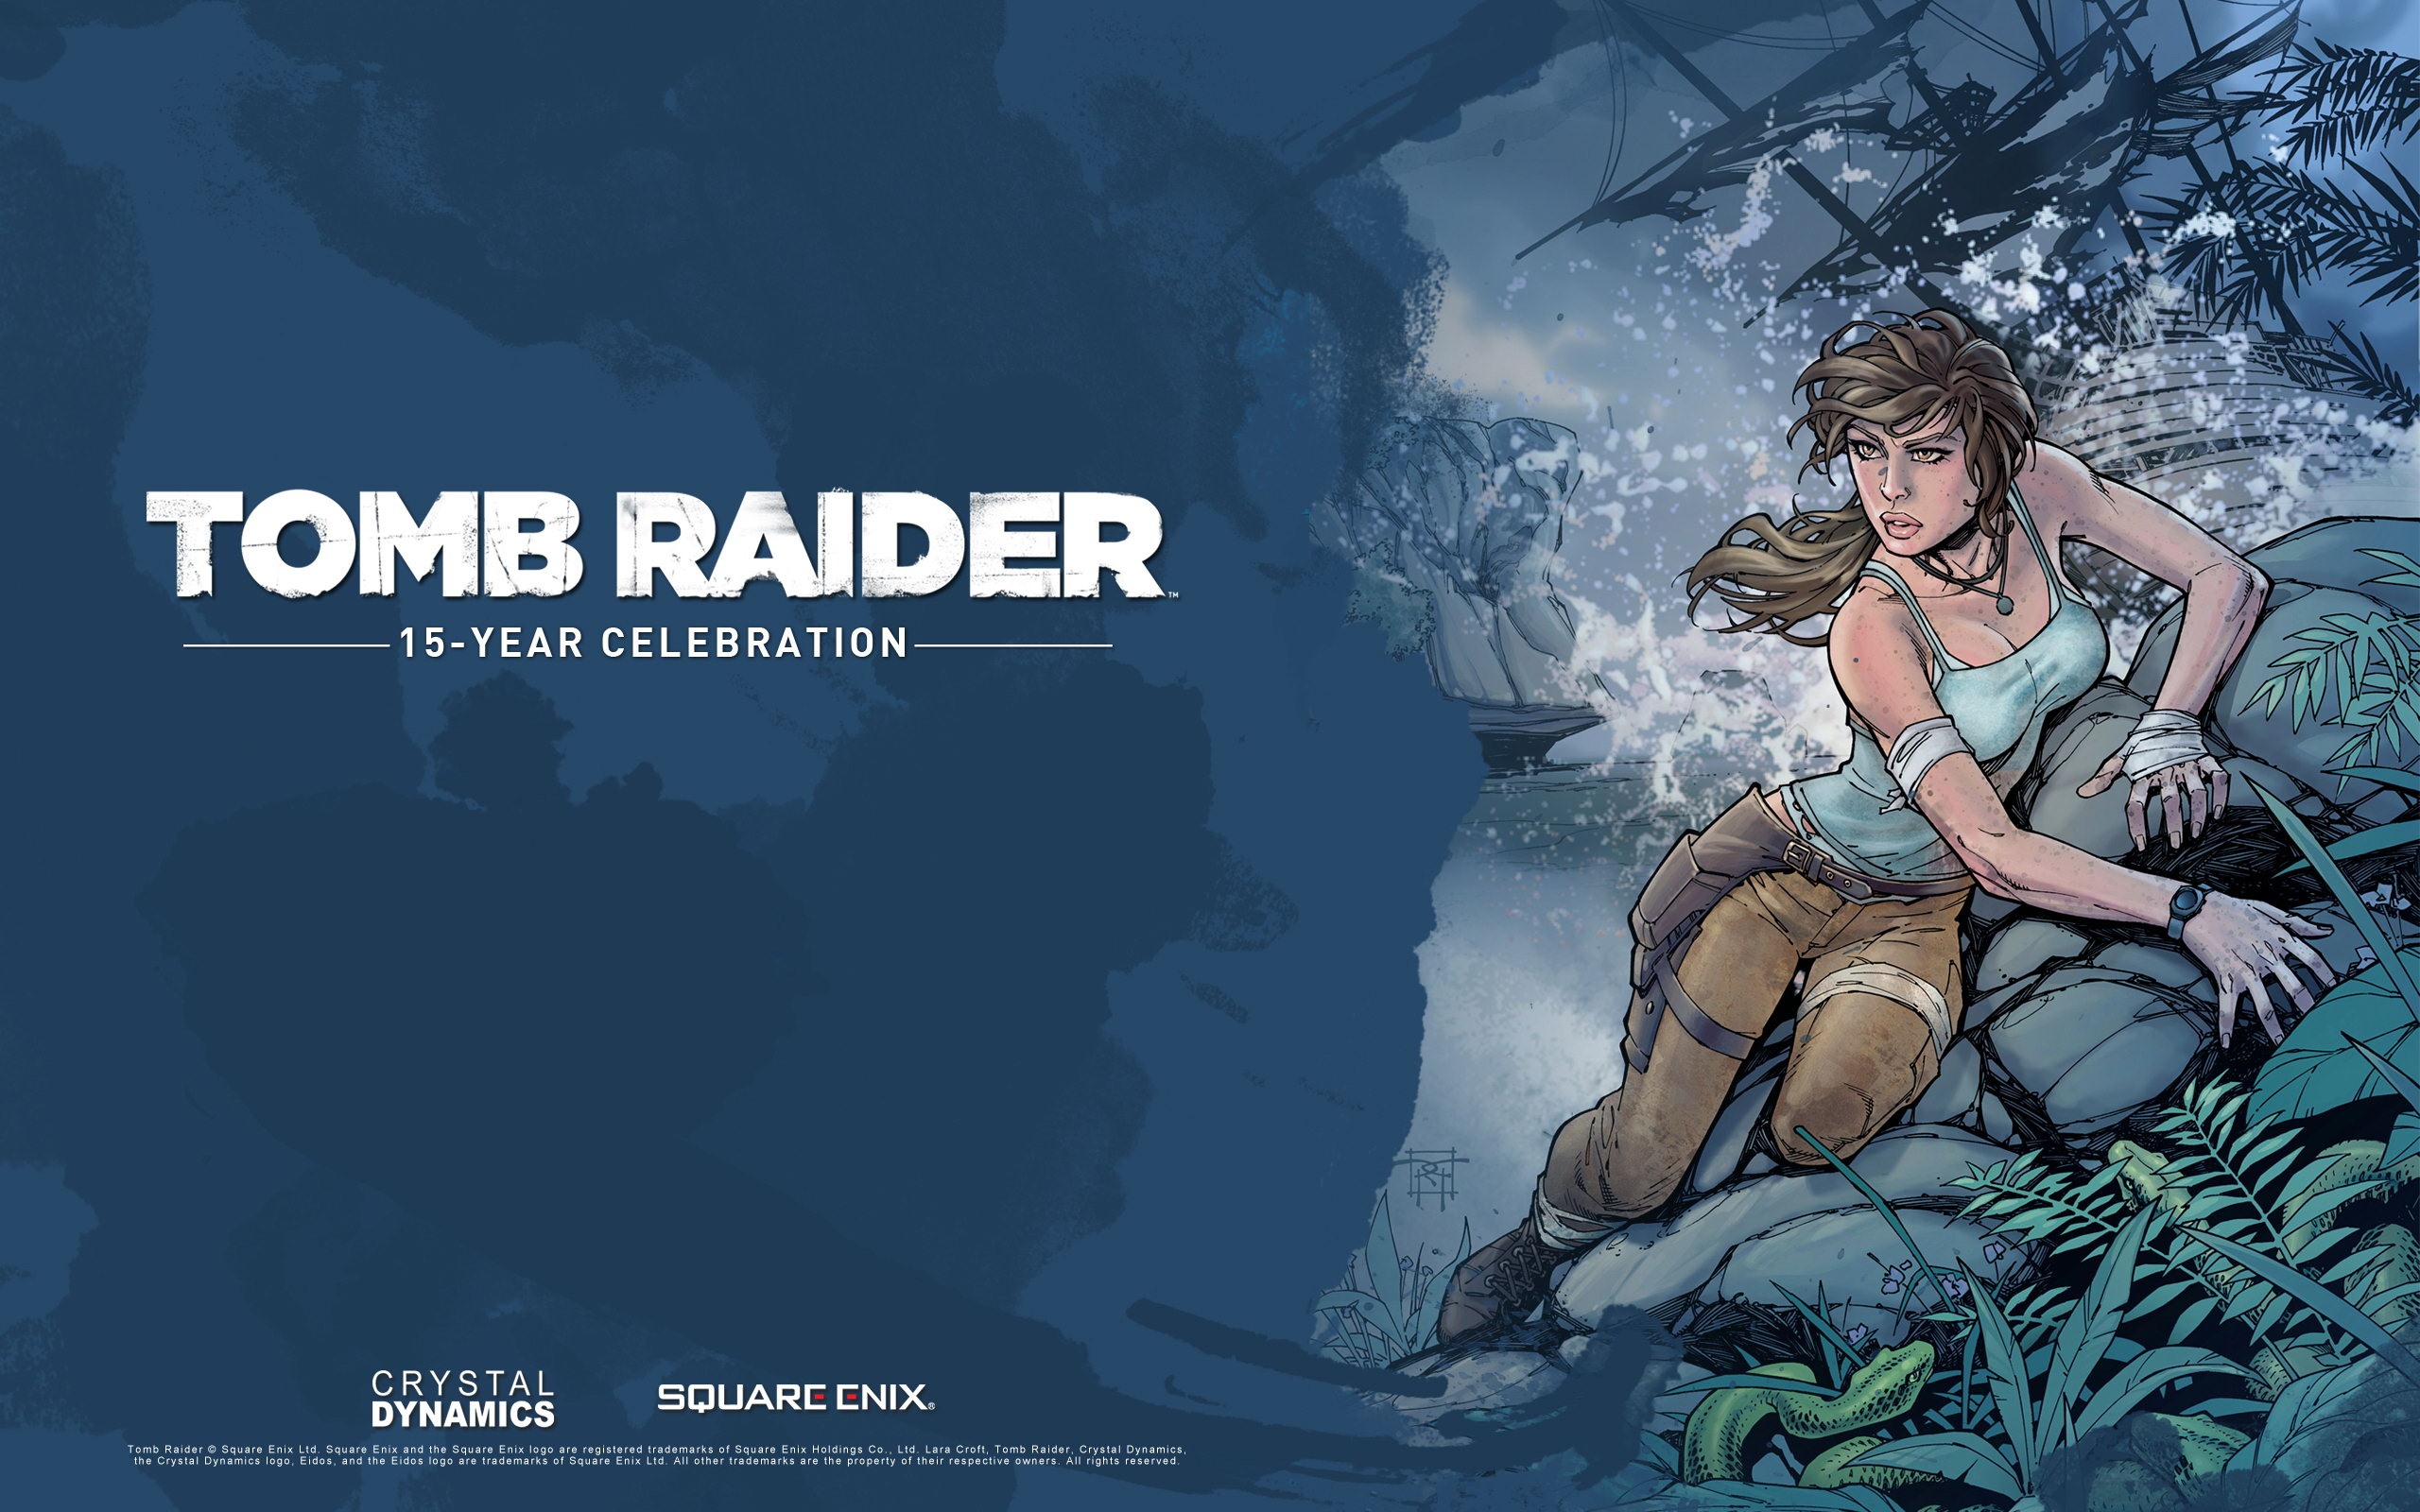 Tomb Raider 15-Year Celebration 古墓丽影15周年纪念版 高清壁纸12 - 2560x1600